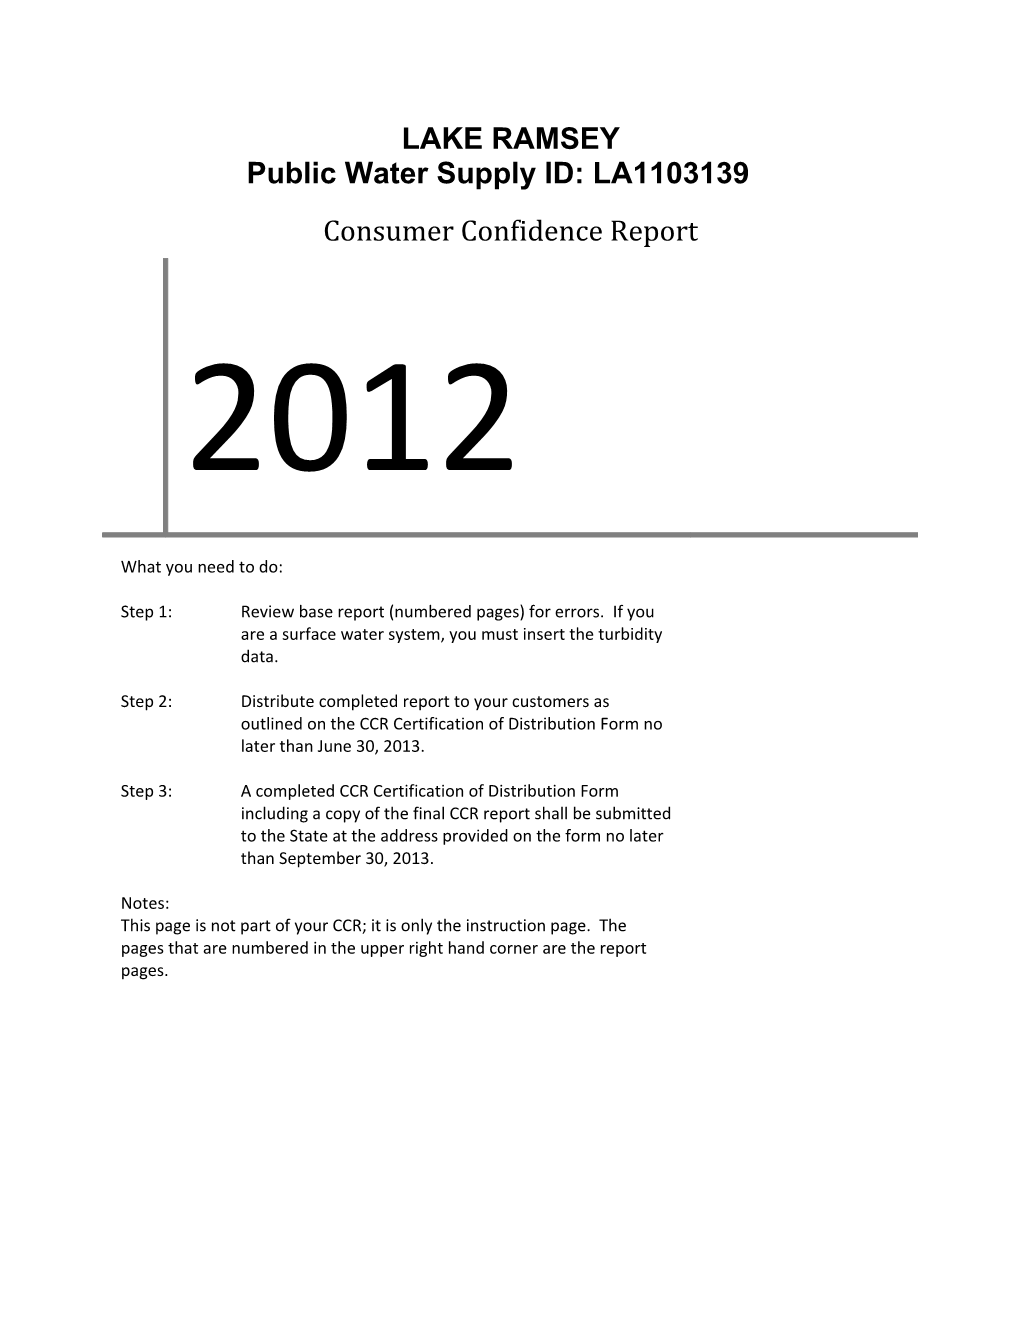 Public Water Supply ID: LA1103139